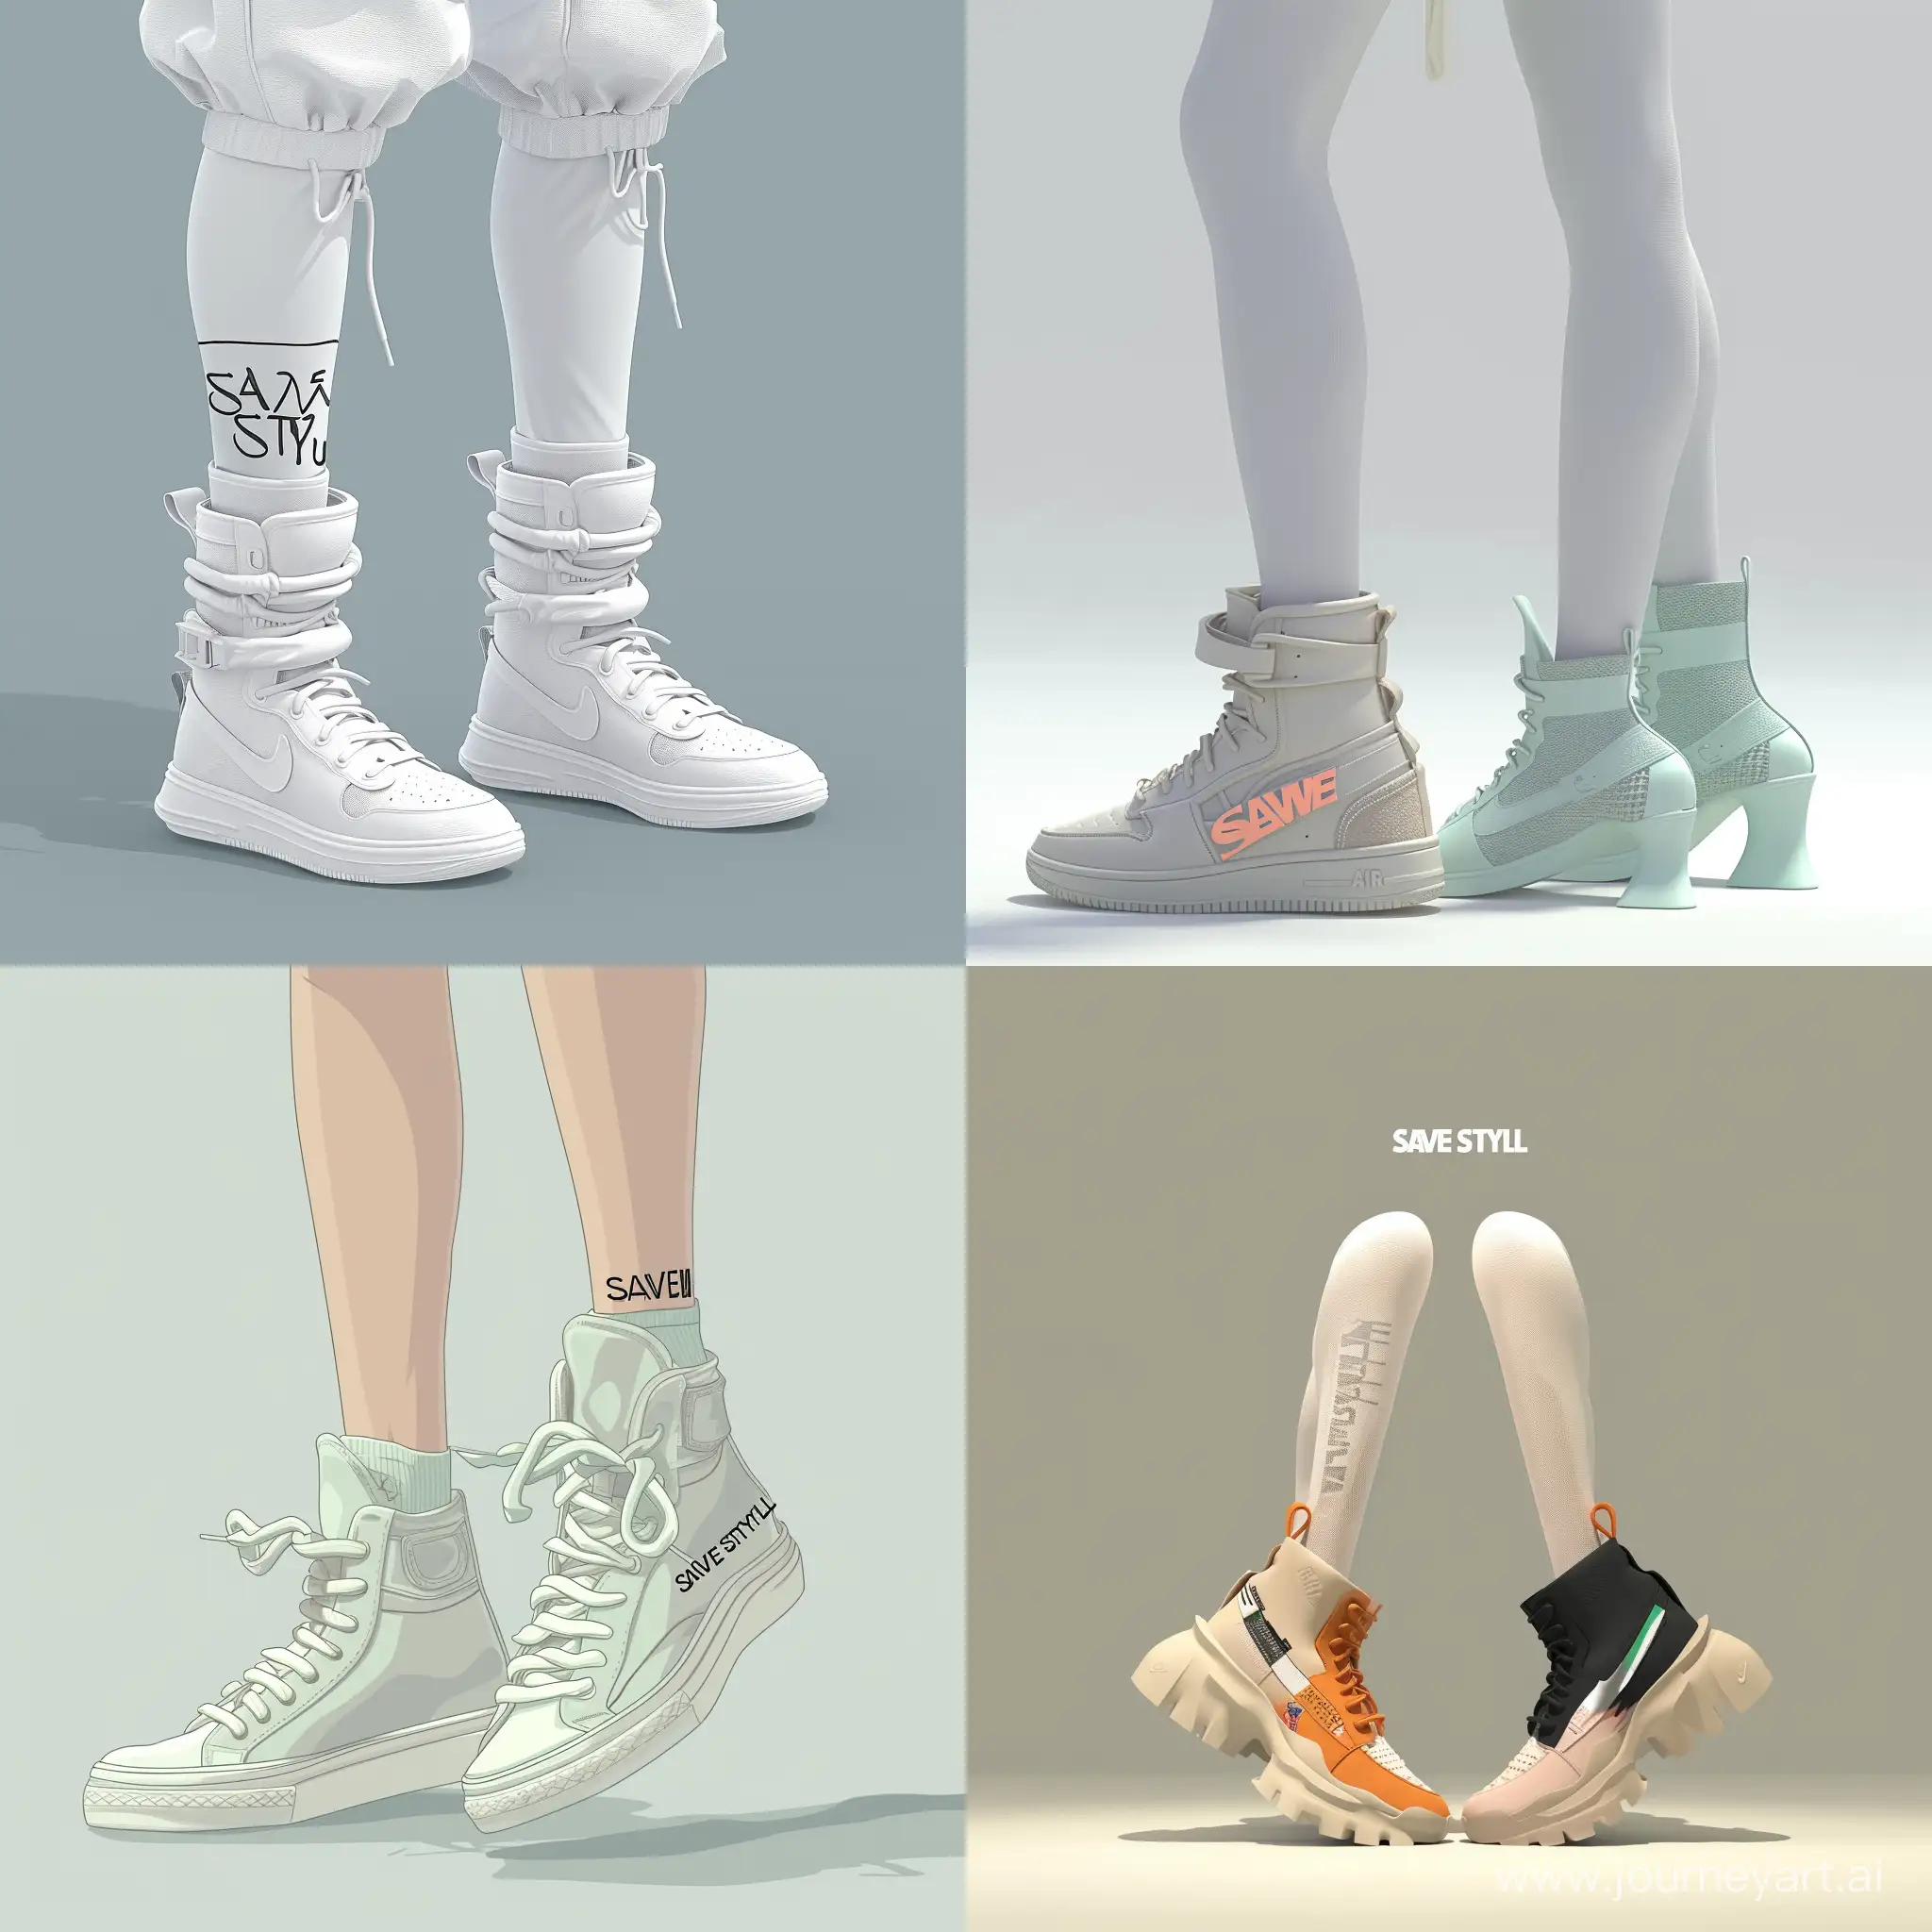 Создай аватарку для интернет магазина брендовых кроссовок, который называется SAVE STYLE, чтобы было видно только 2д ноги одетые в кроссовки и написано было полное название магазина